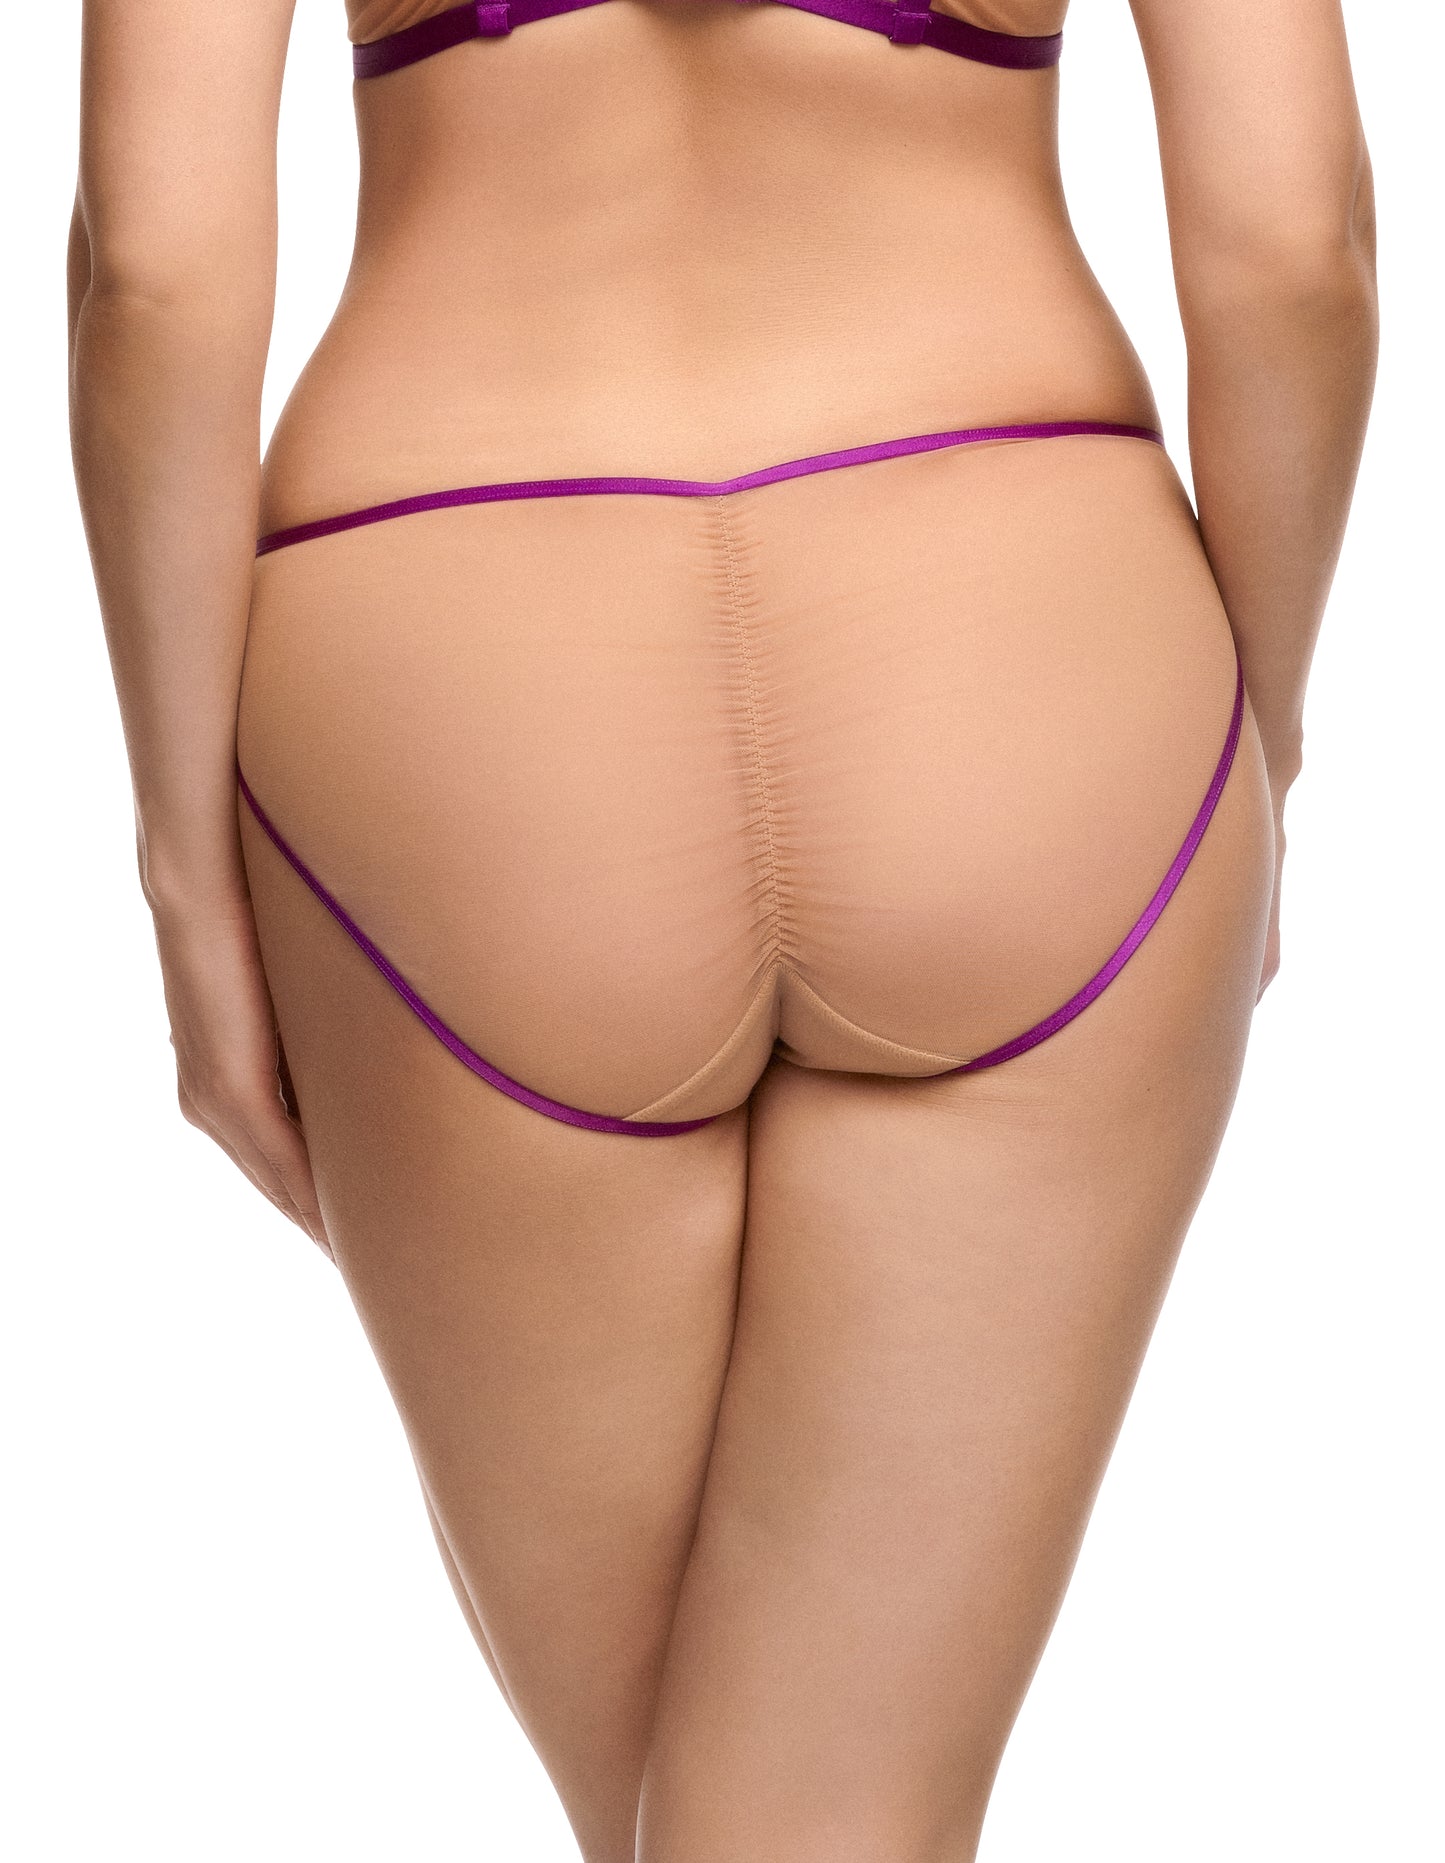 Femmoiselle Bikini Brief In Shocking Violet By Dita Von Teese - sizes XS + S